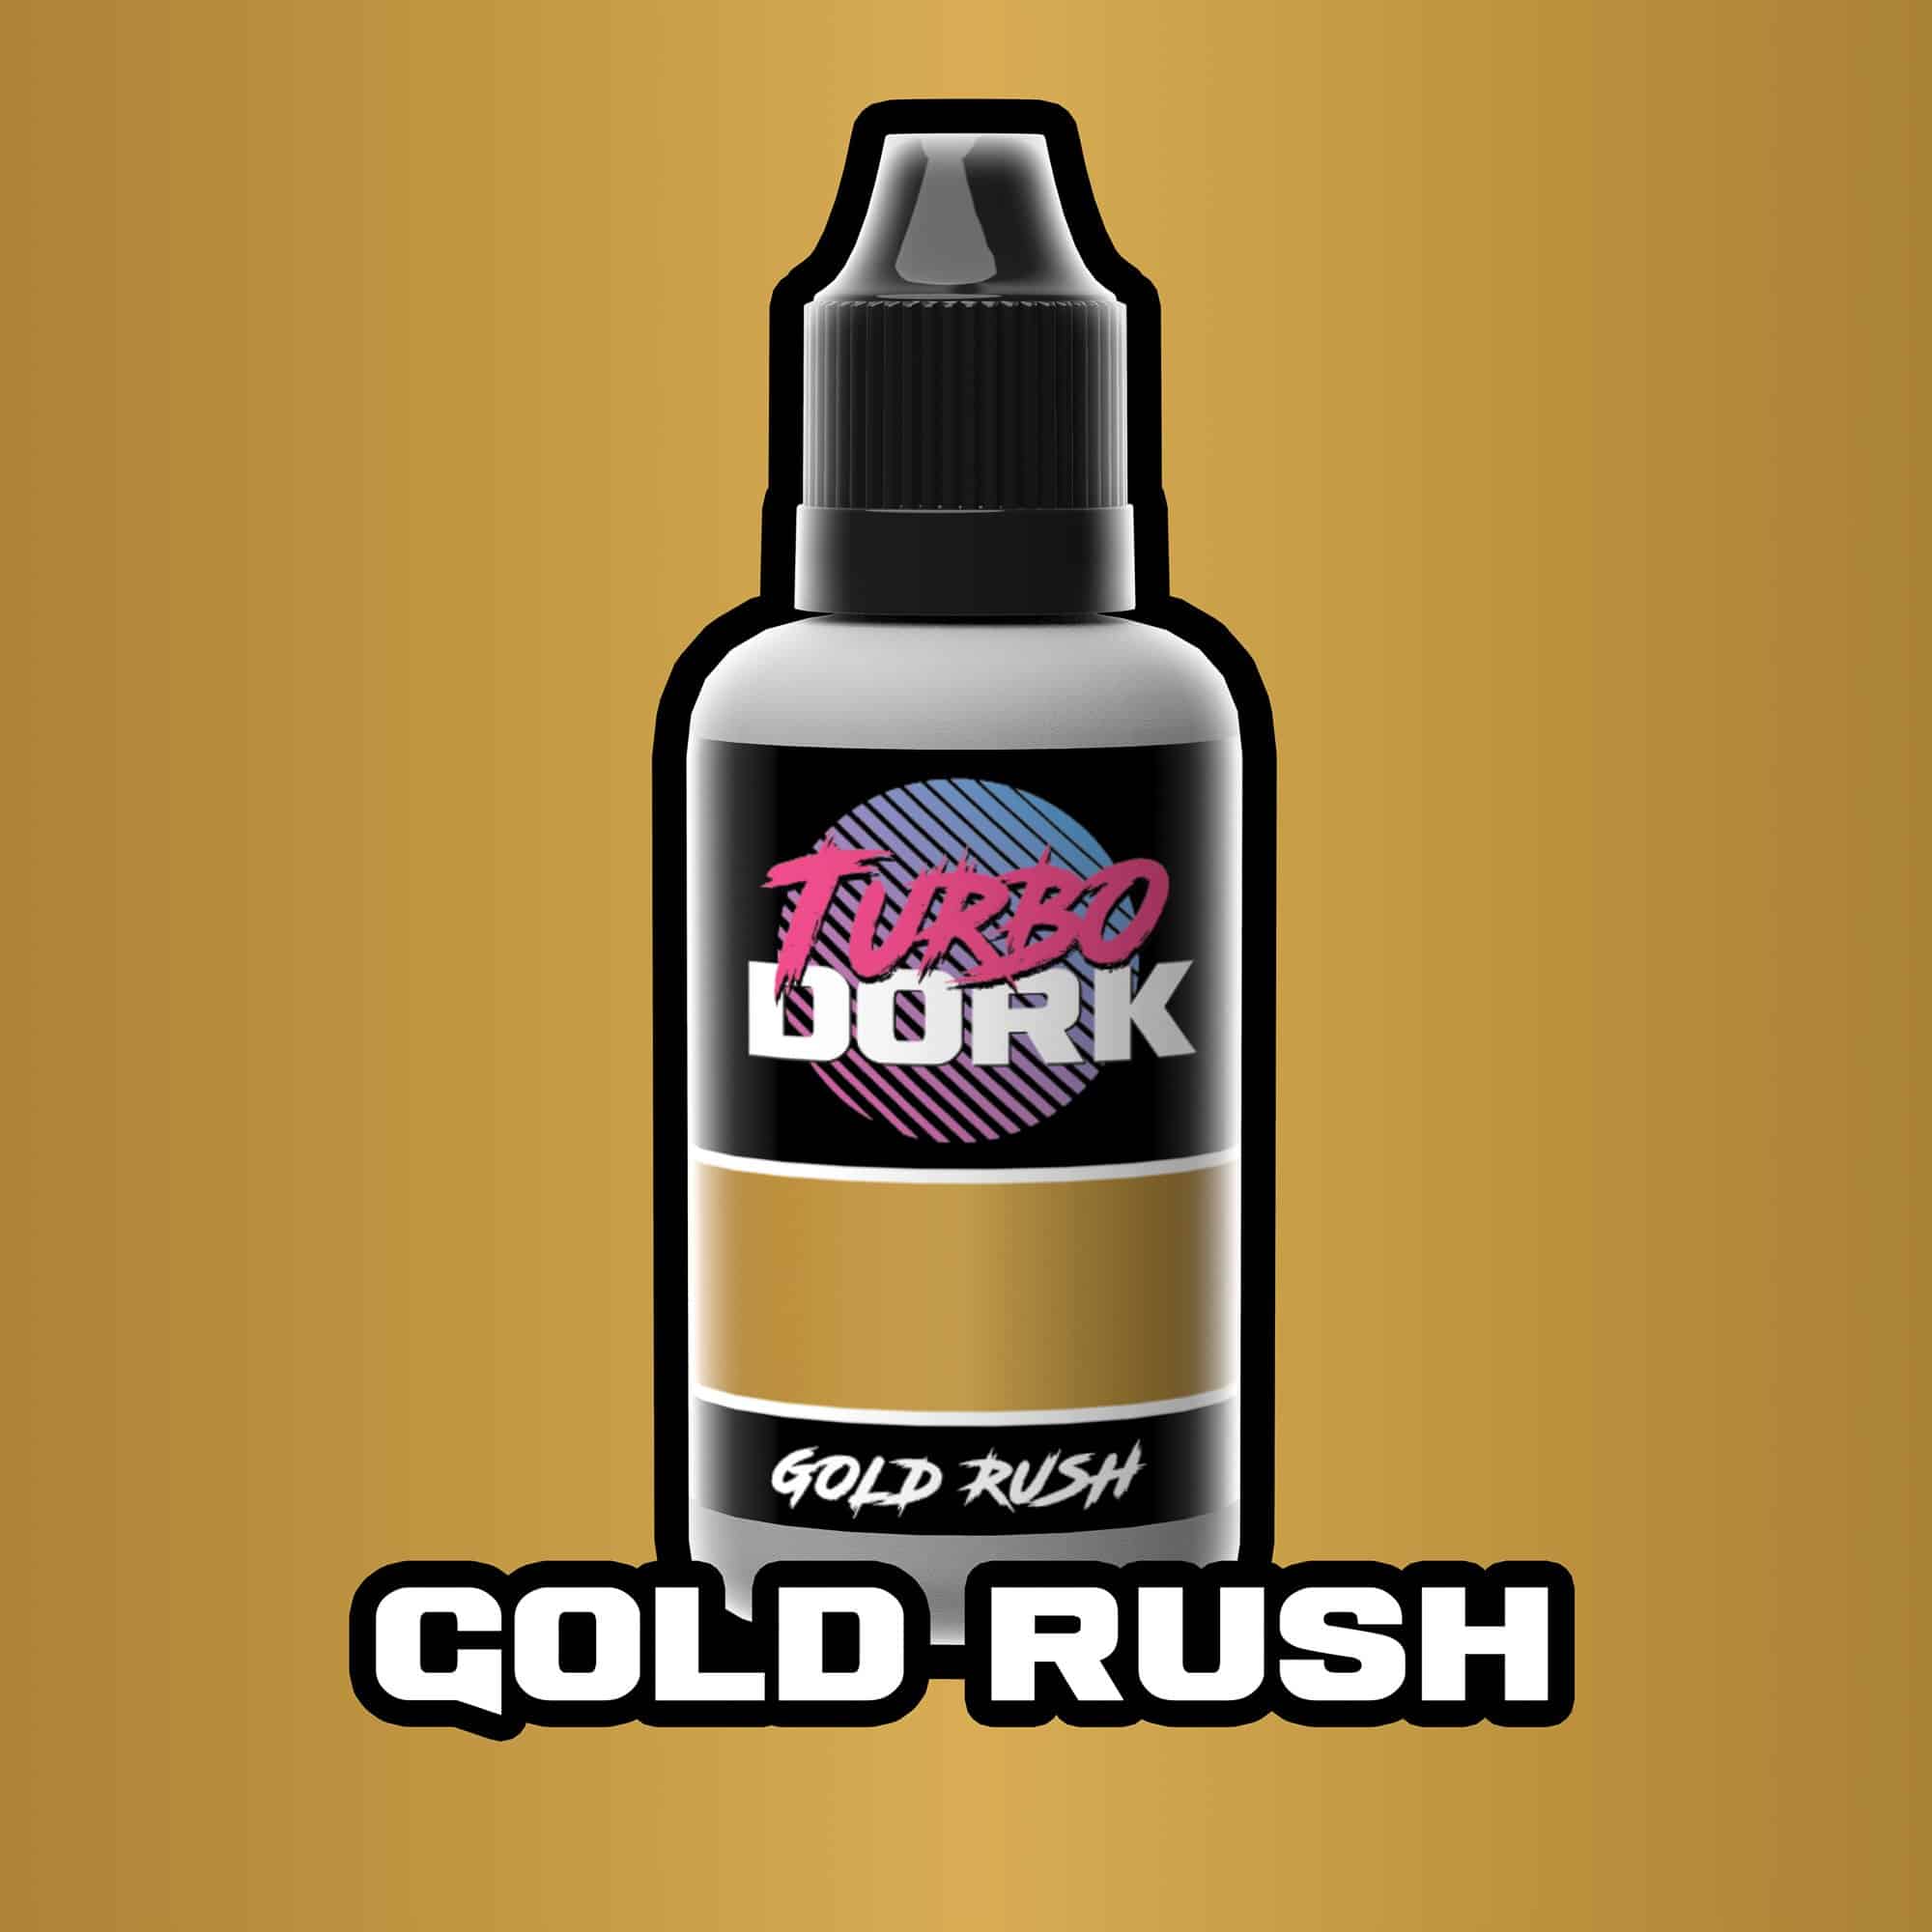 Turbo Dork Paint - Gold Rush - Metallic